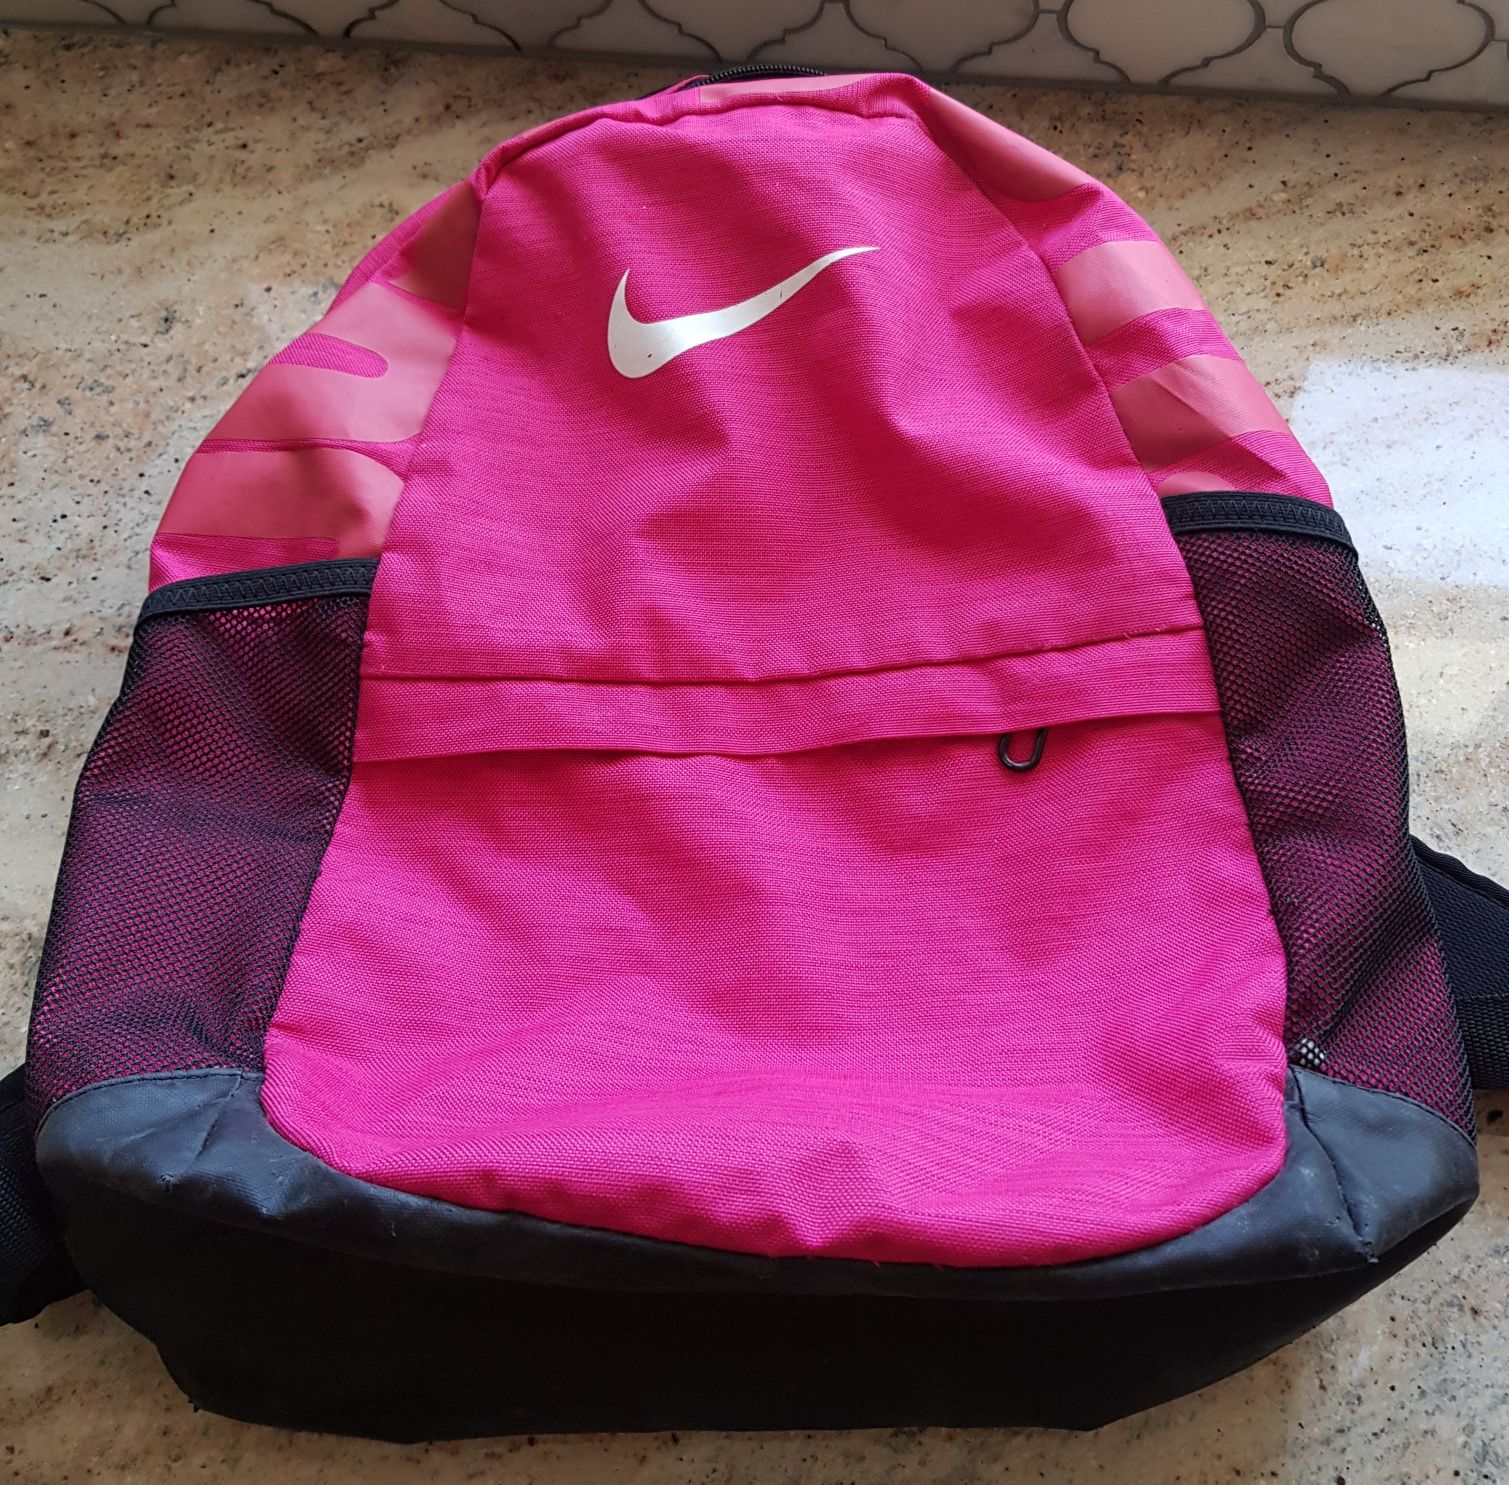 Plecak Nike duży śliczny różowy